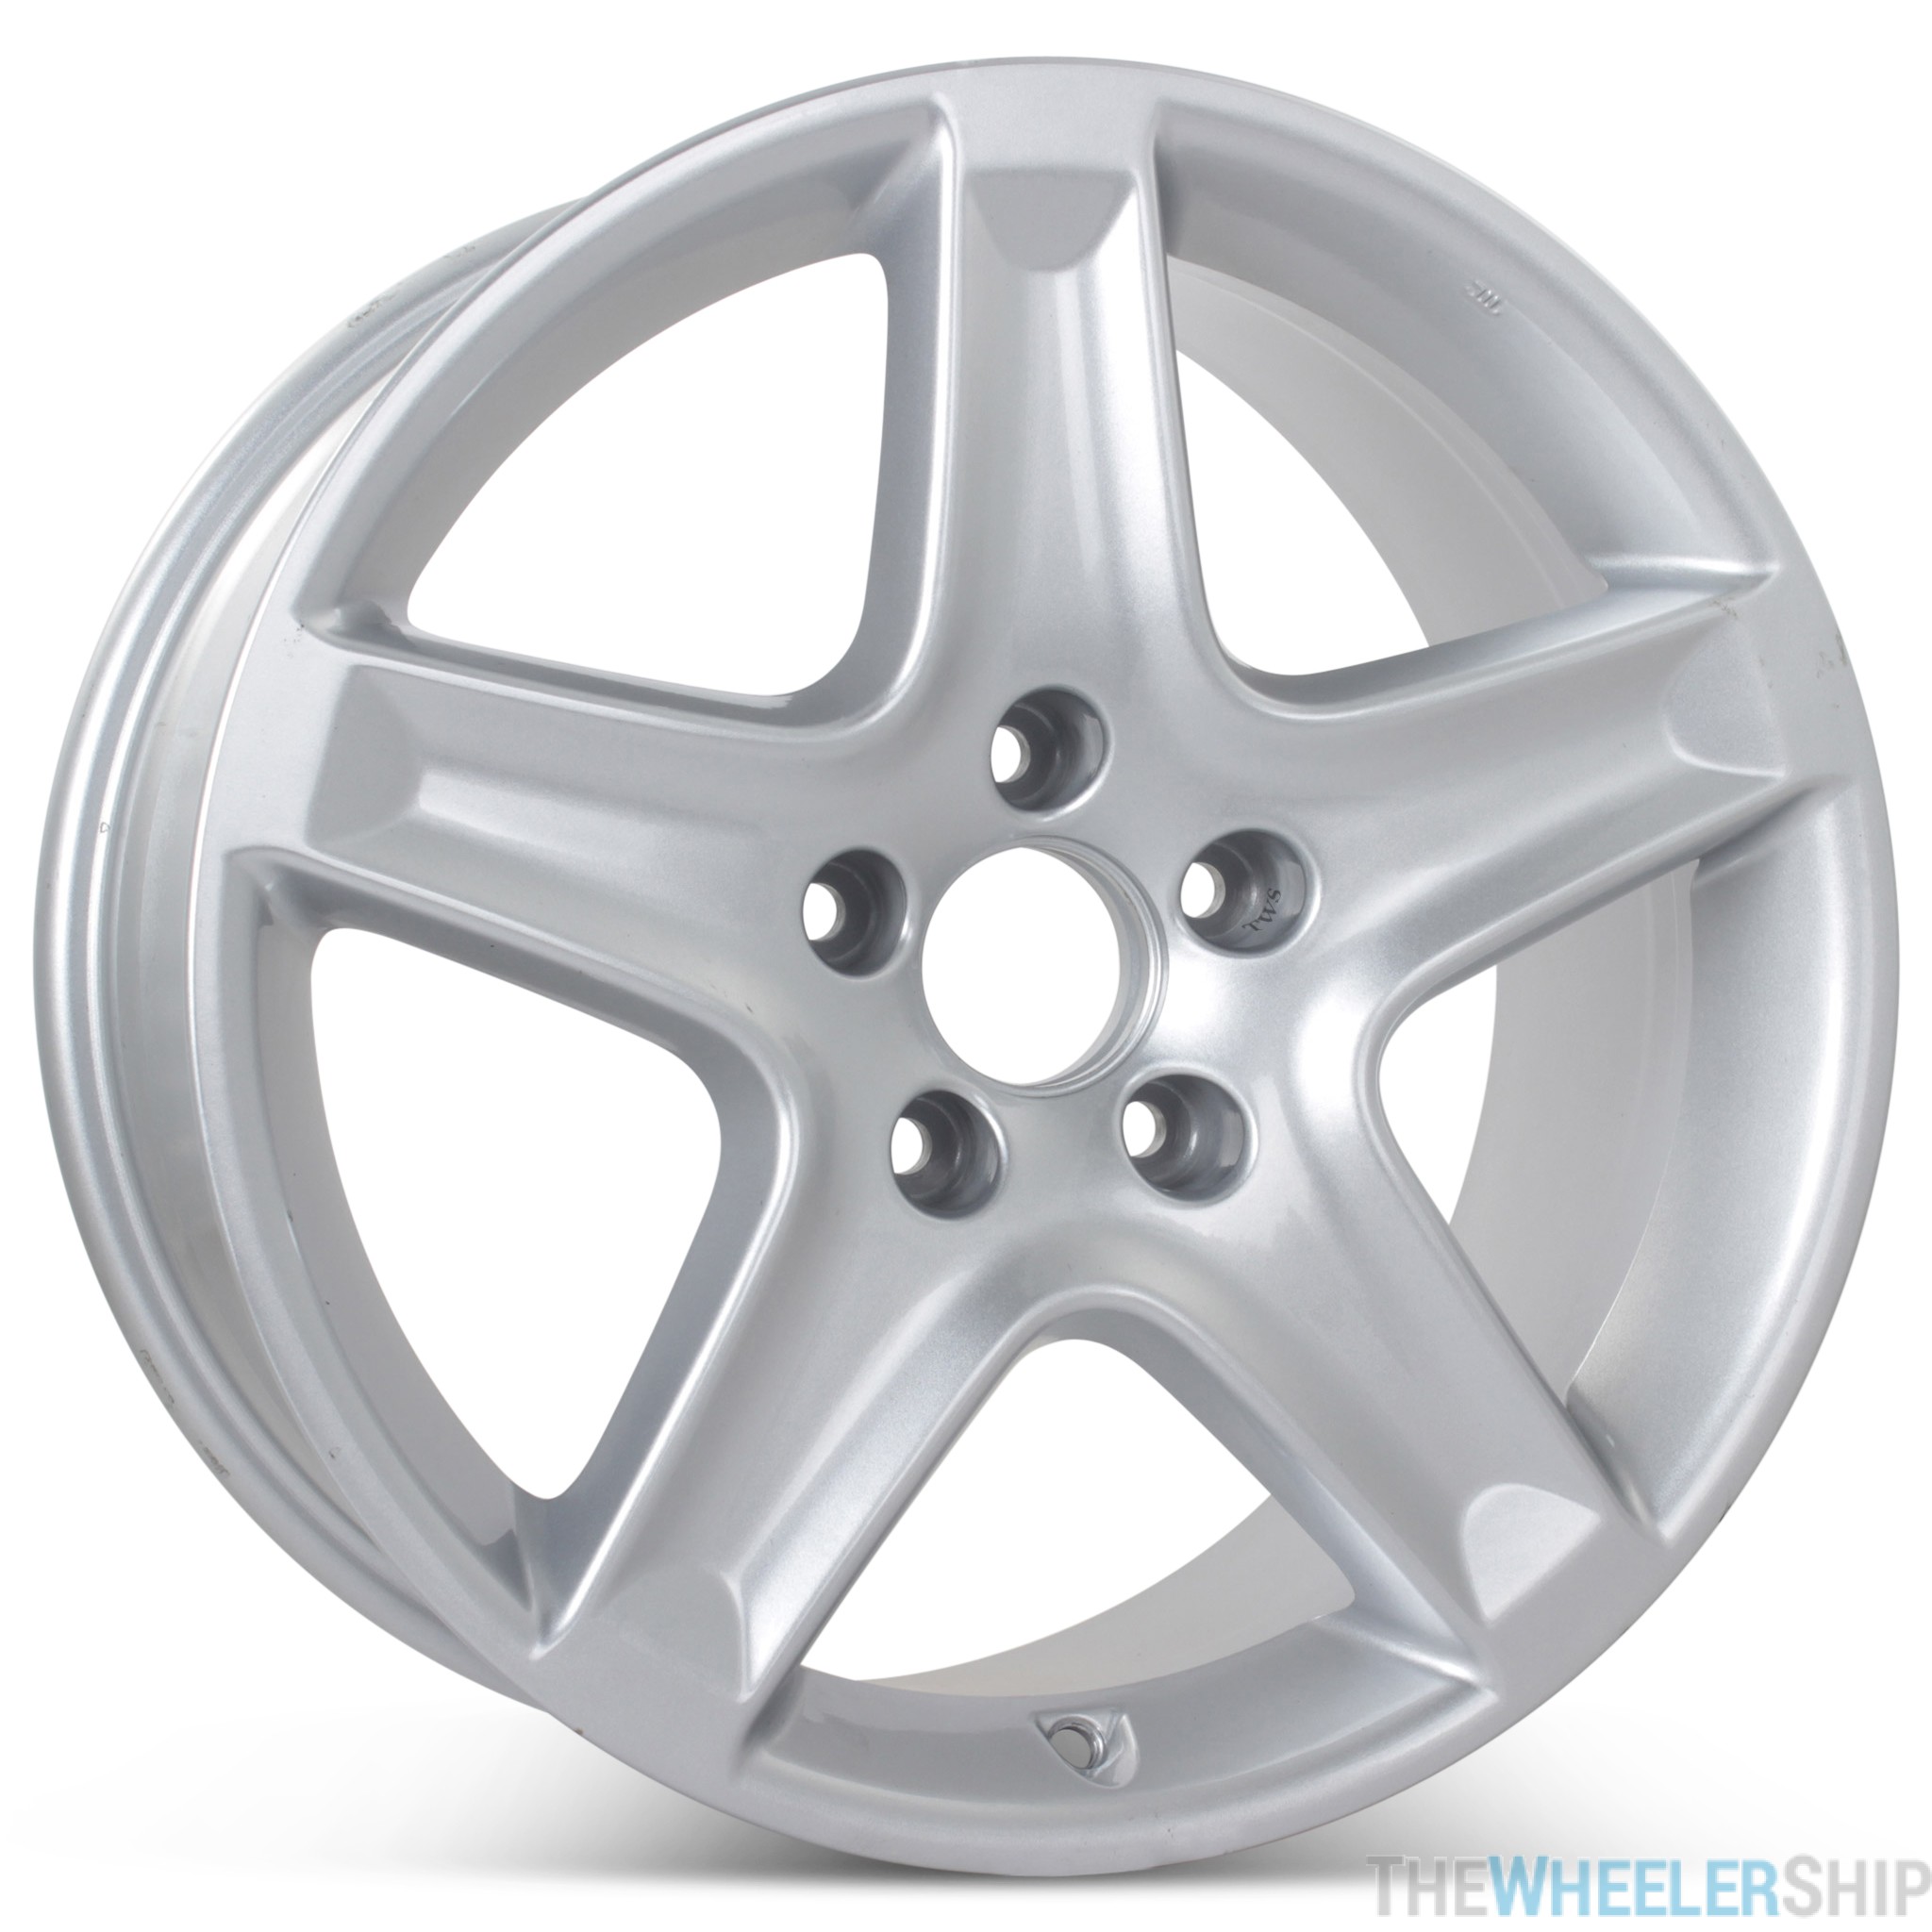 33-35, Black Vozada Spare Tire Cover Wheel Protectors Weatherproof